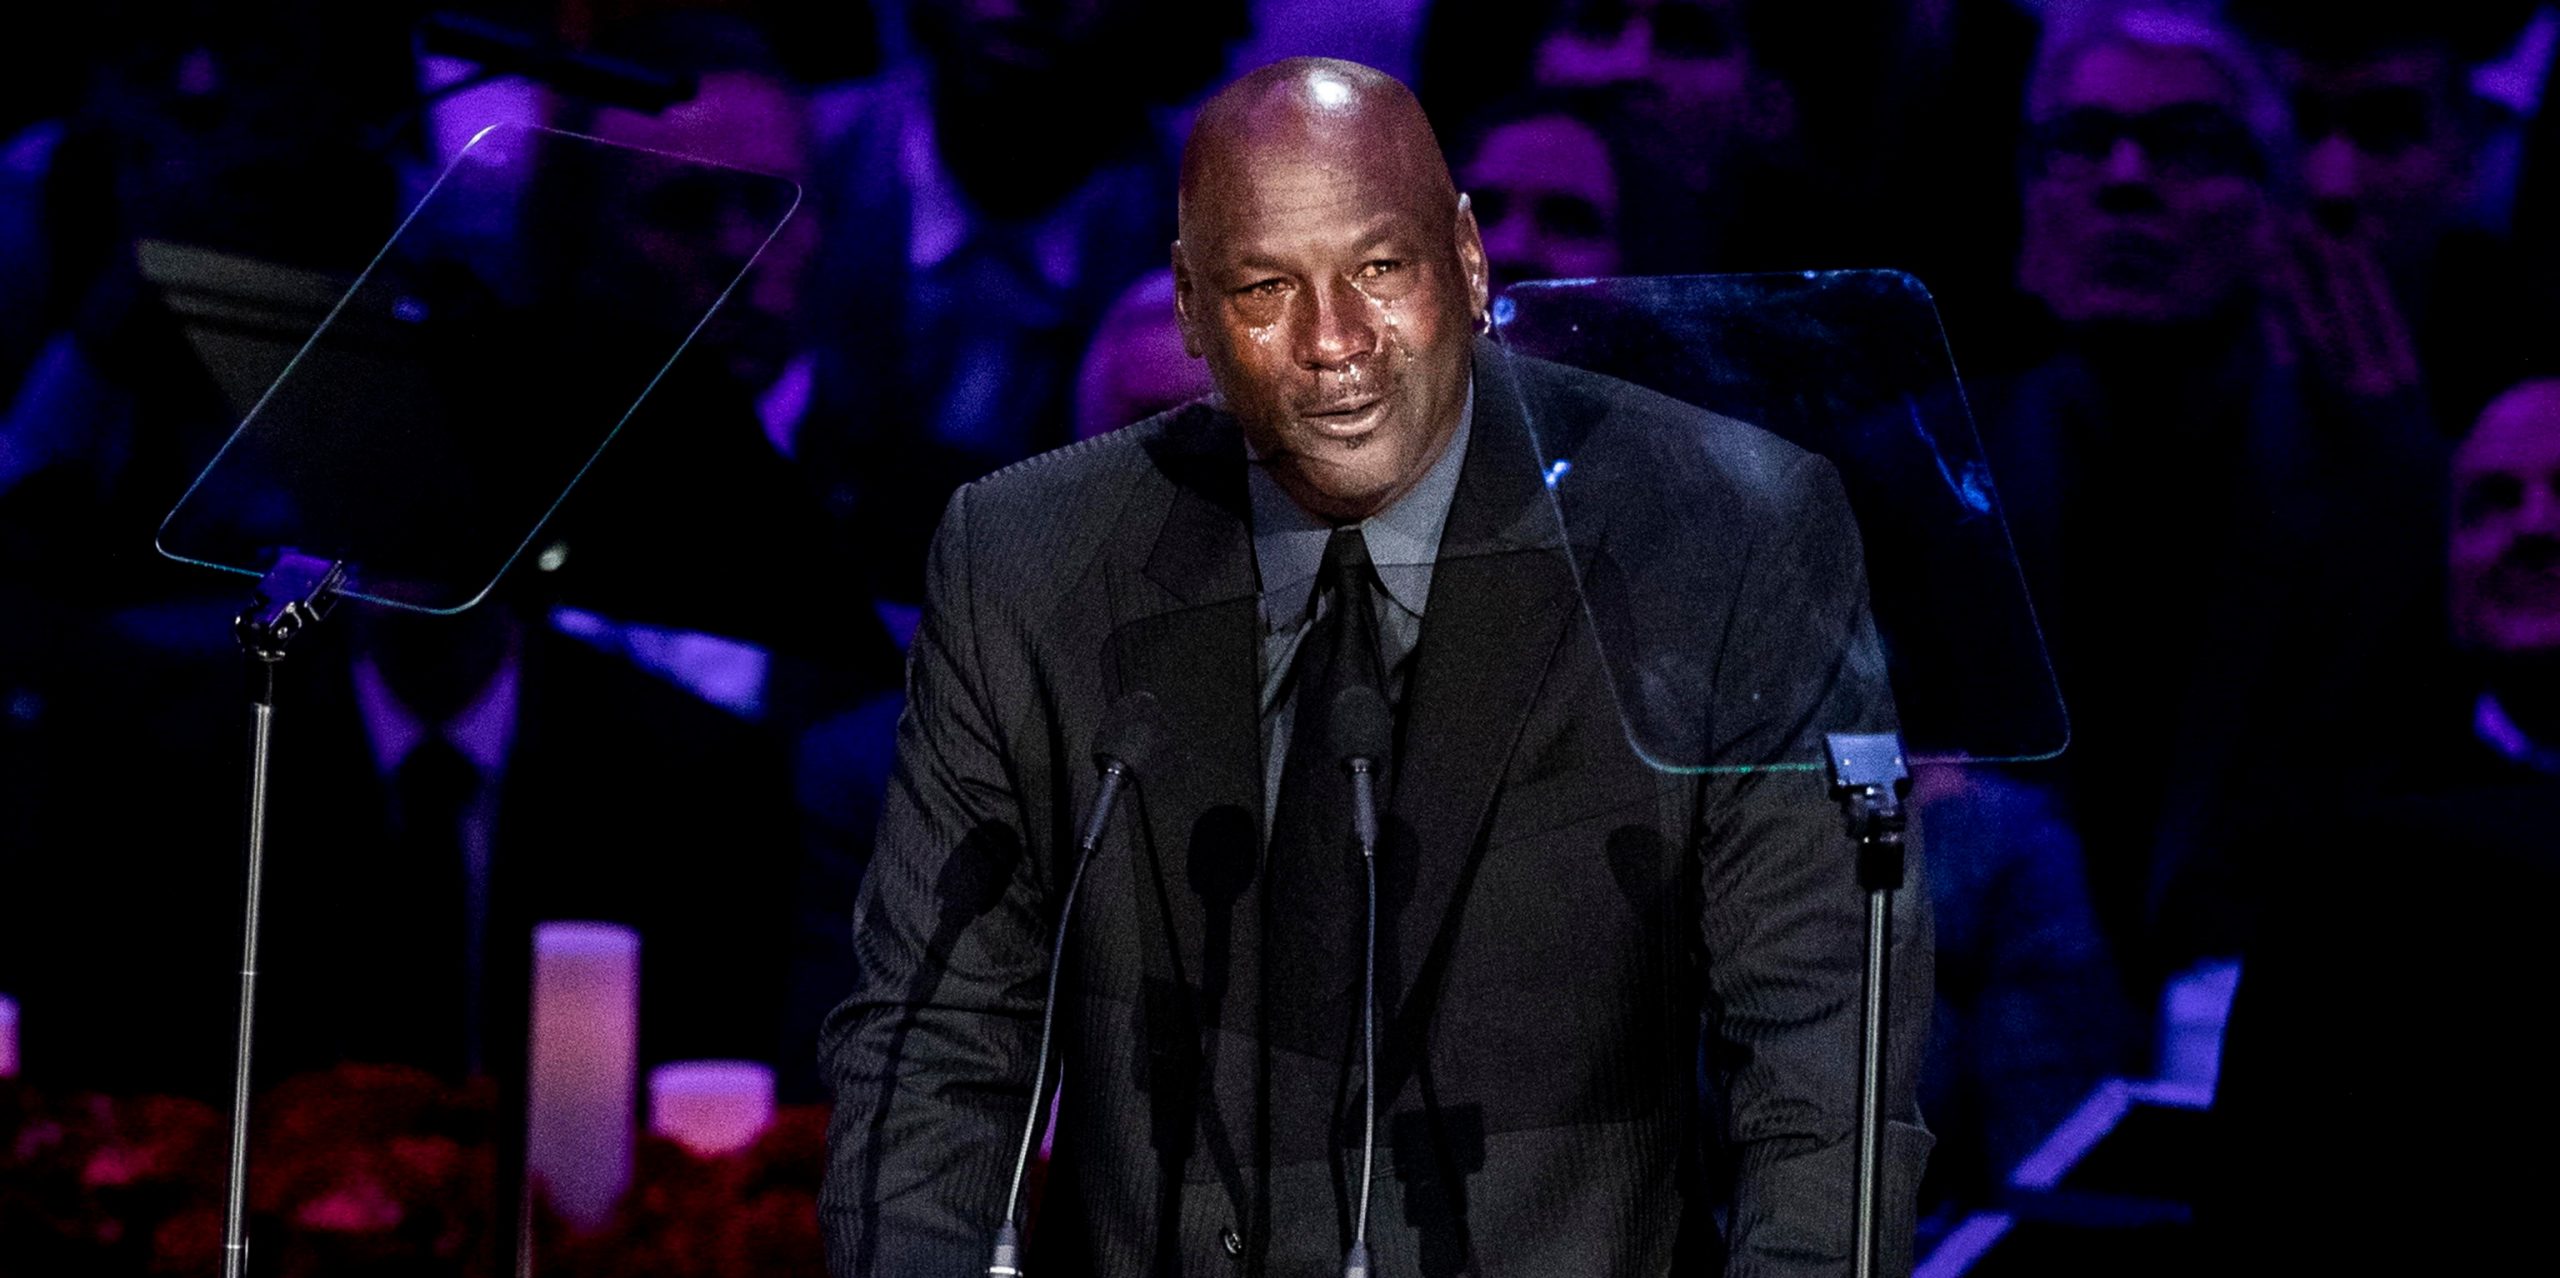 Michael Jordan durante il suo discorso alla commemorazione di Kobe Bryant, a Los Angeles, in California, negli Stati Uniti, il 24 febbraio 2020 (ANSA/EPA/ETIENNE LAURENT)